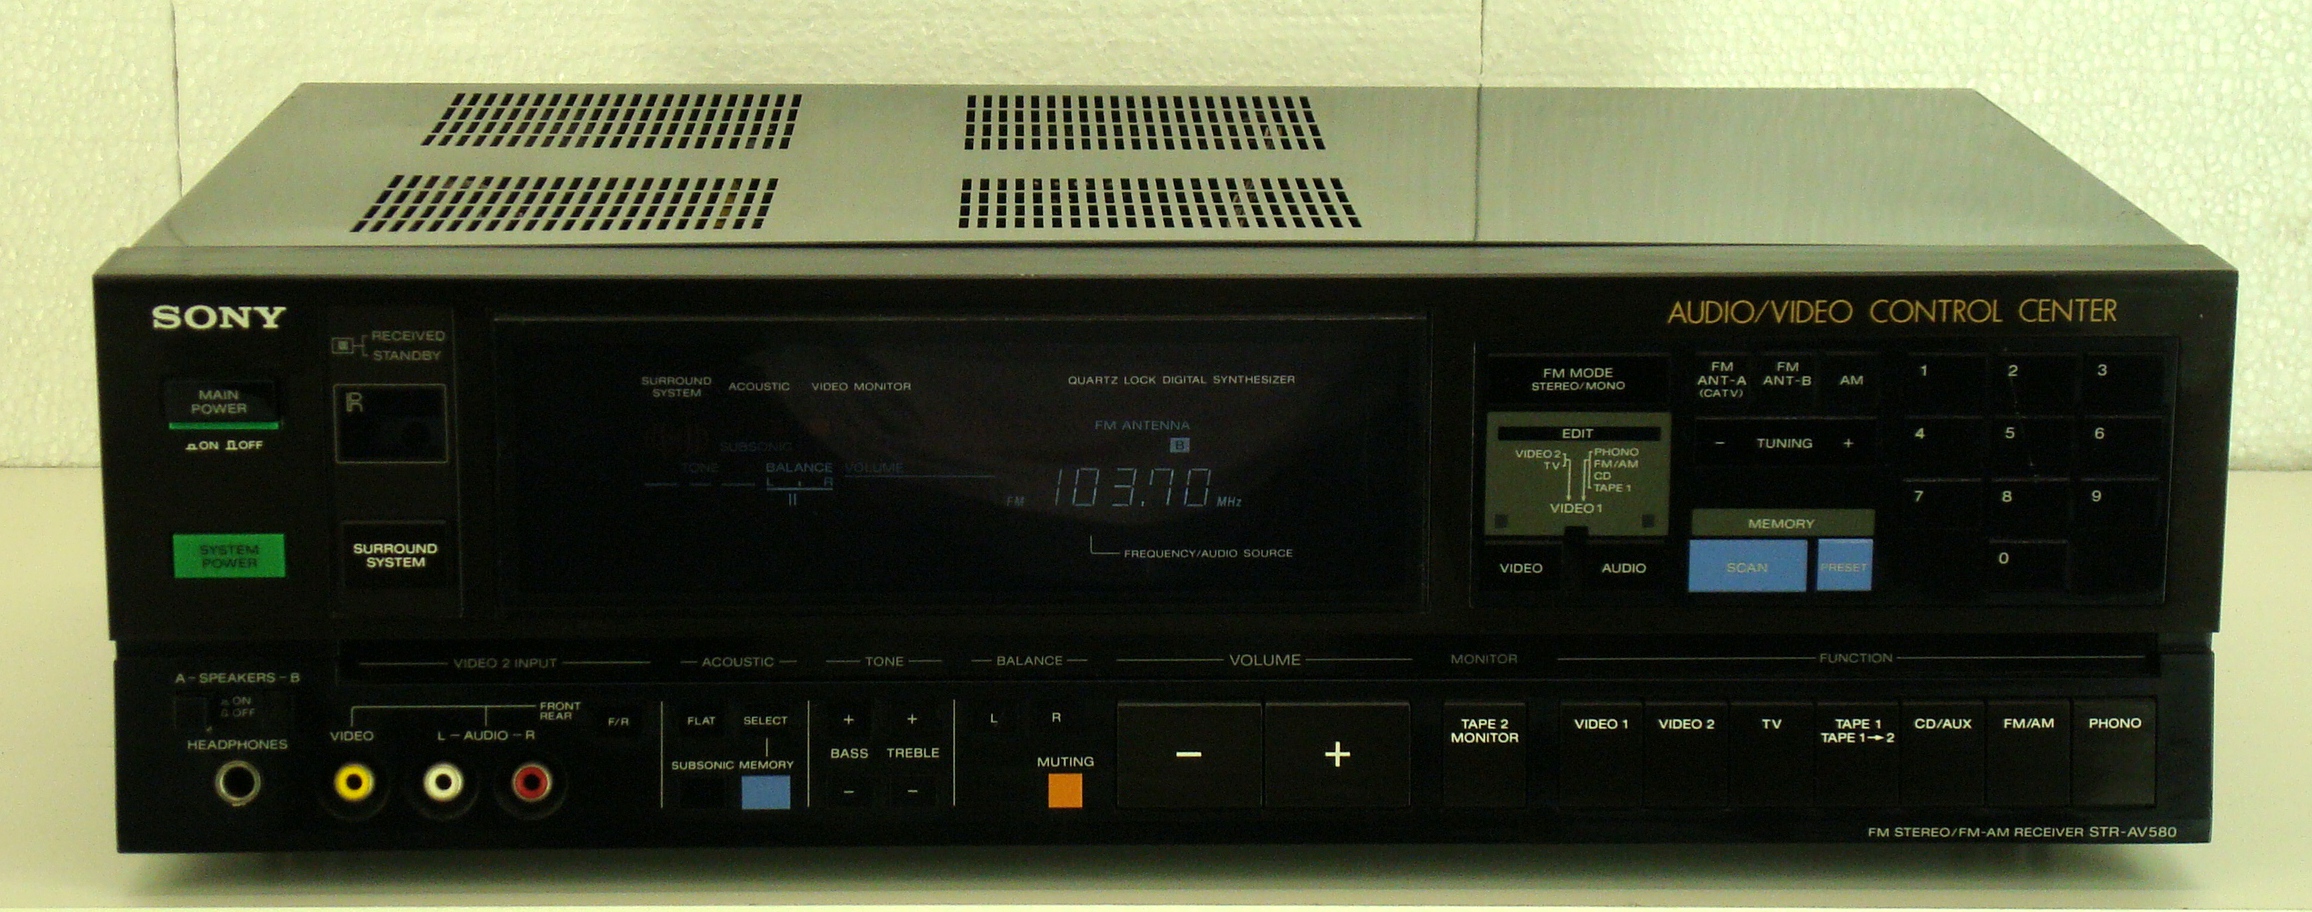 Sony STR-AV580